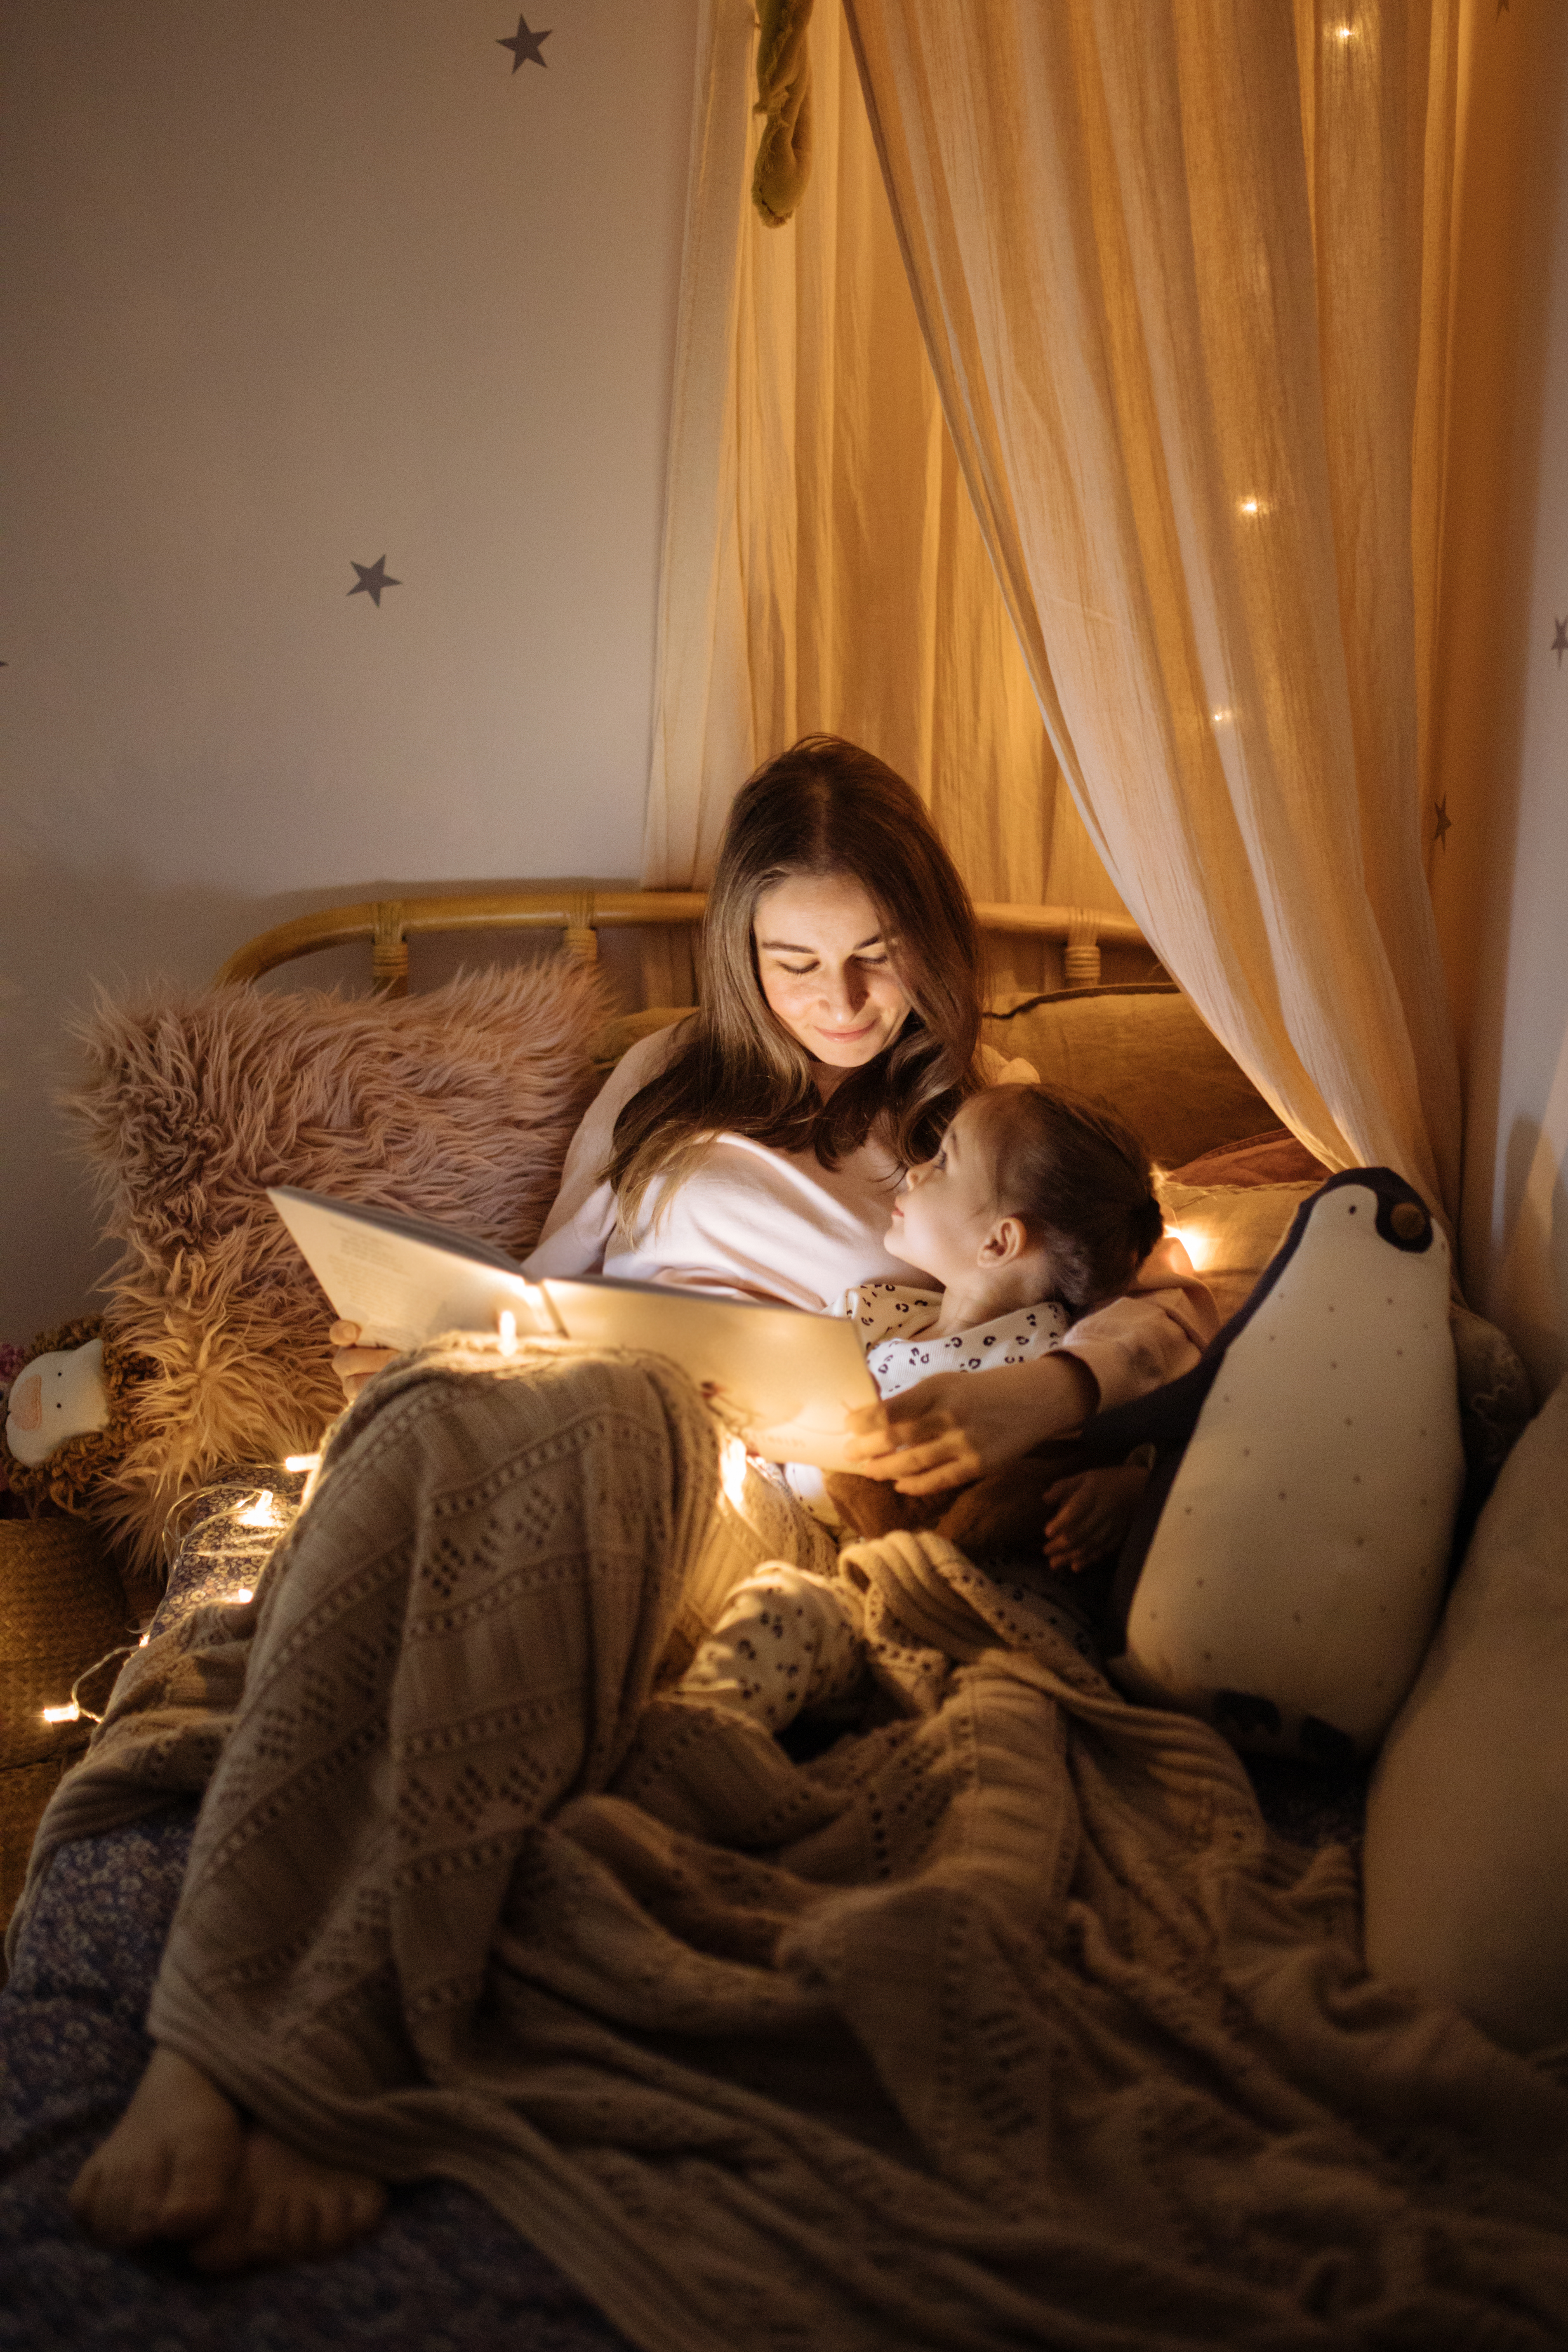 Mère et enfant lisant un livre au lit avant de s'endormir | Source : Getty Images